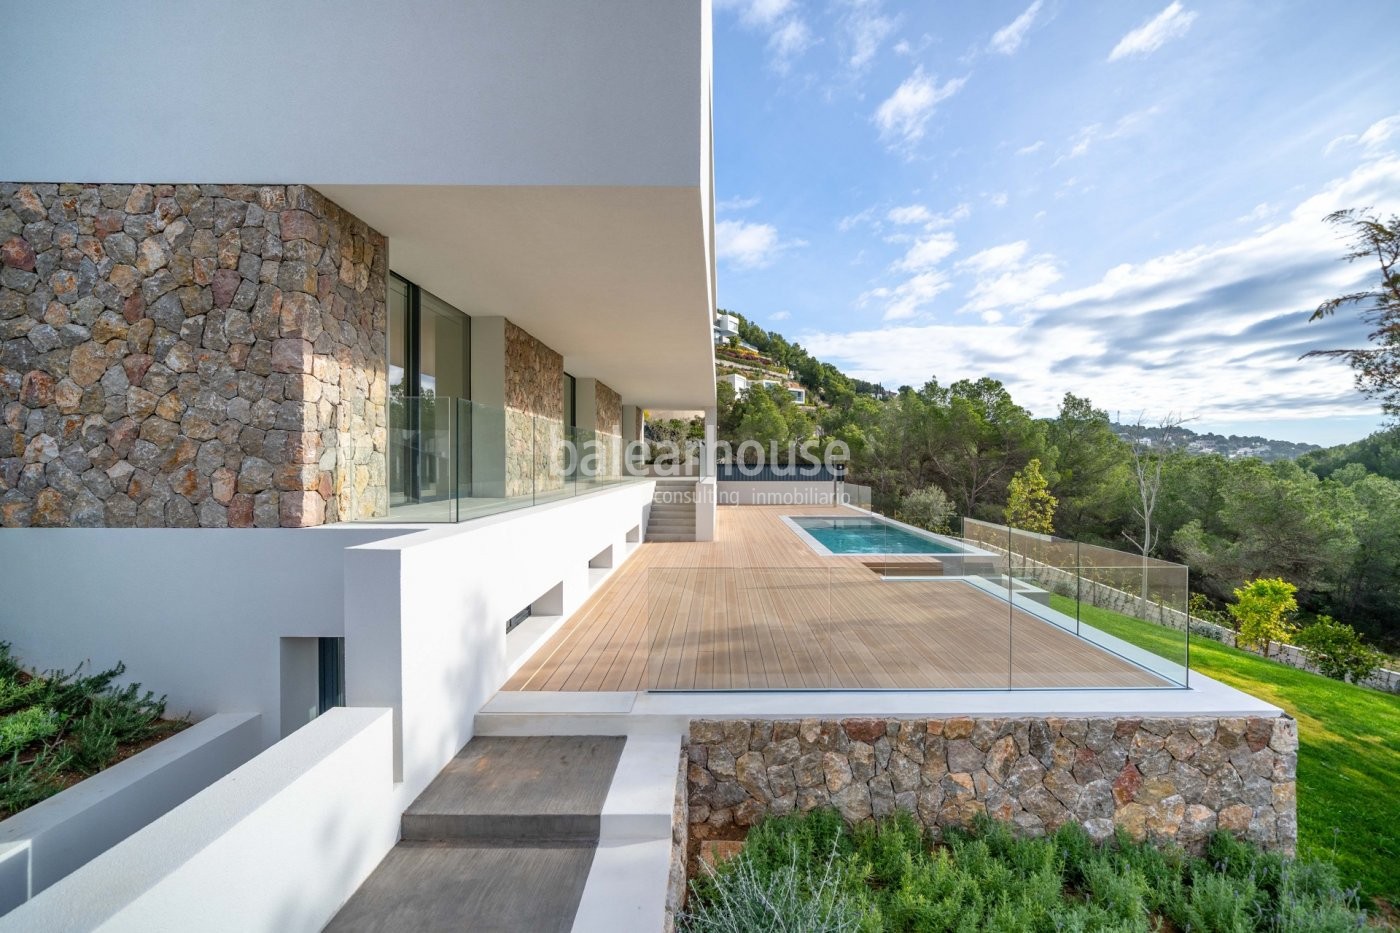 Neue und zeitgemäße Villa in Neubau, die maximales Wohlbefinden an der Costa d'en Blanes bietet.